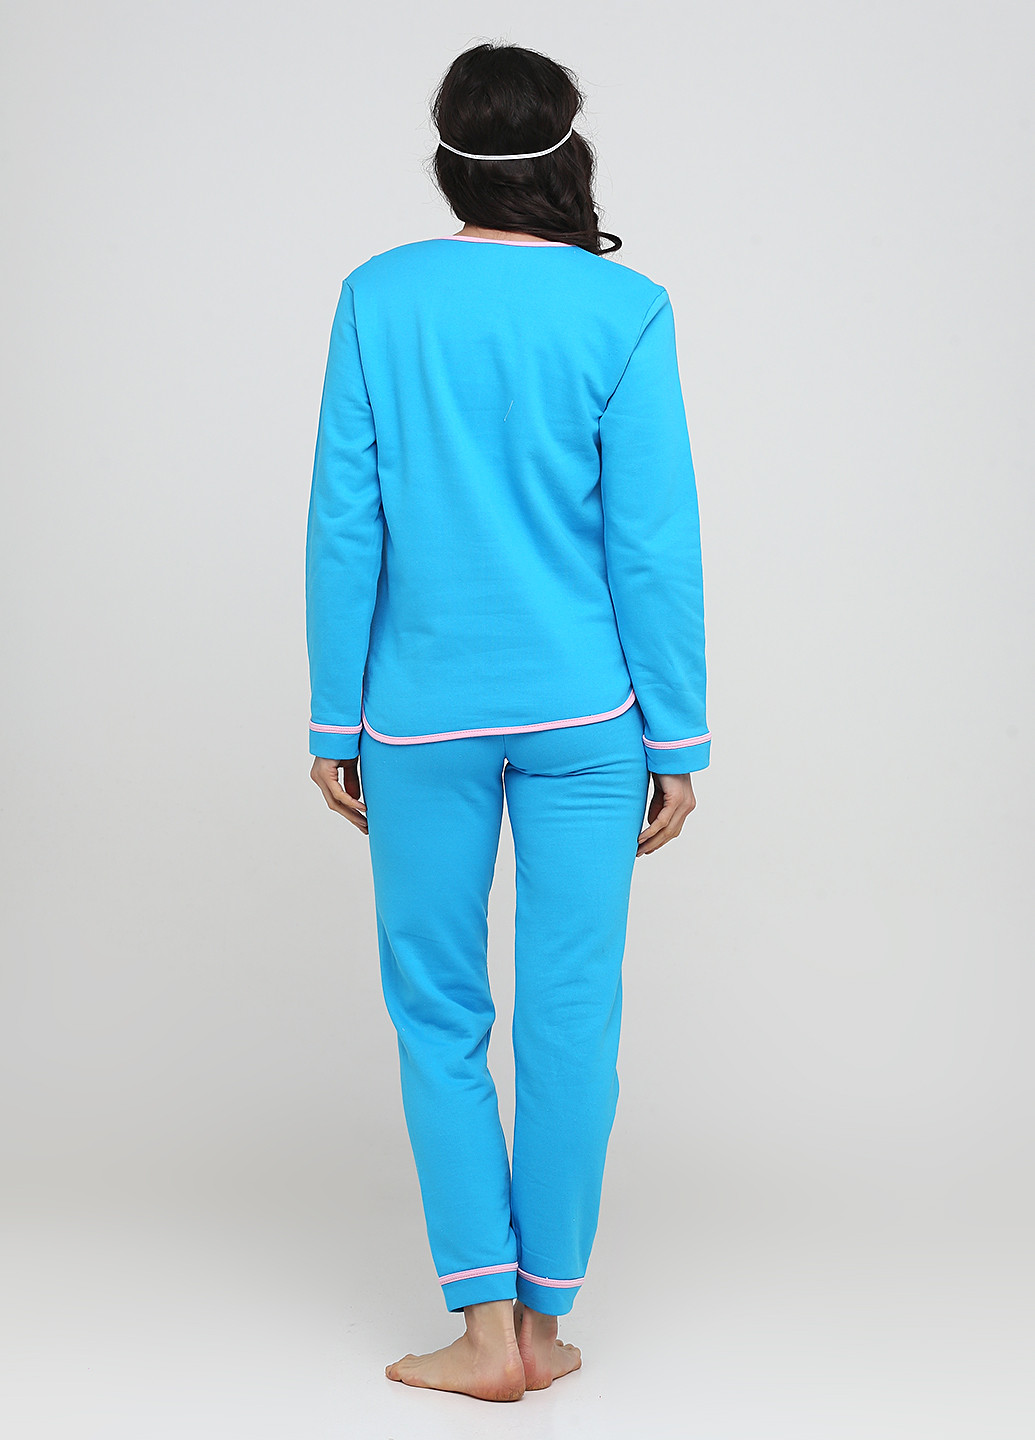 Синяя всесезон пижама (маска для сна, свитшот, брюки) свитшот + брюки Трикомир